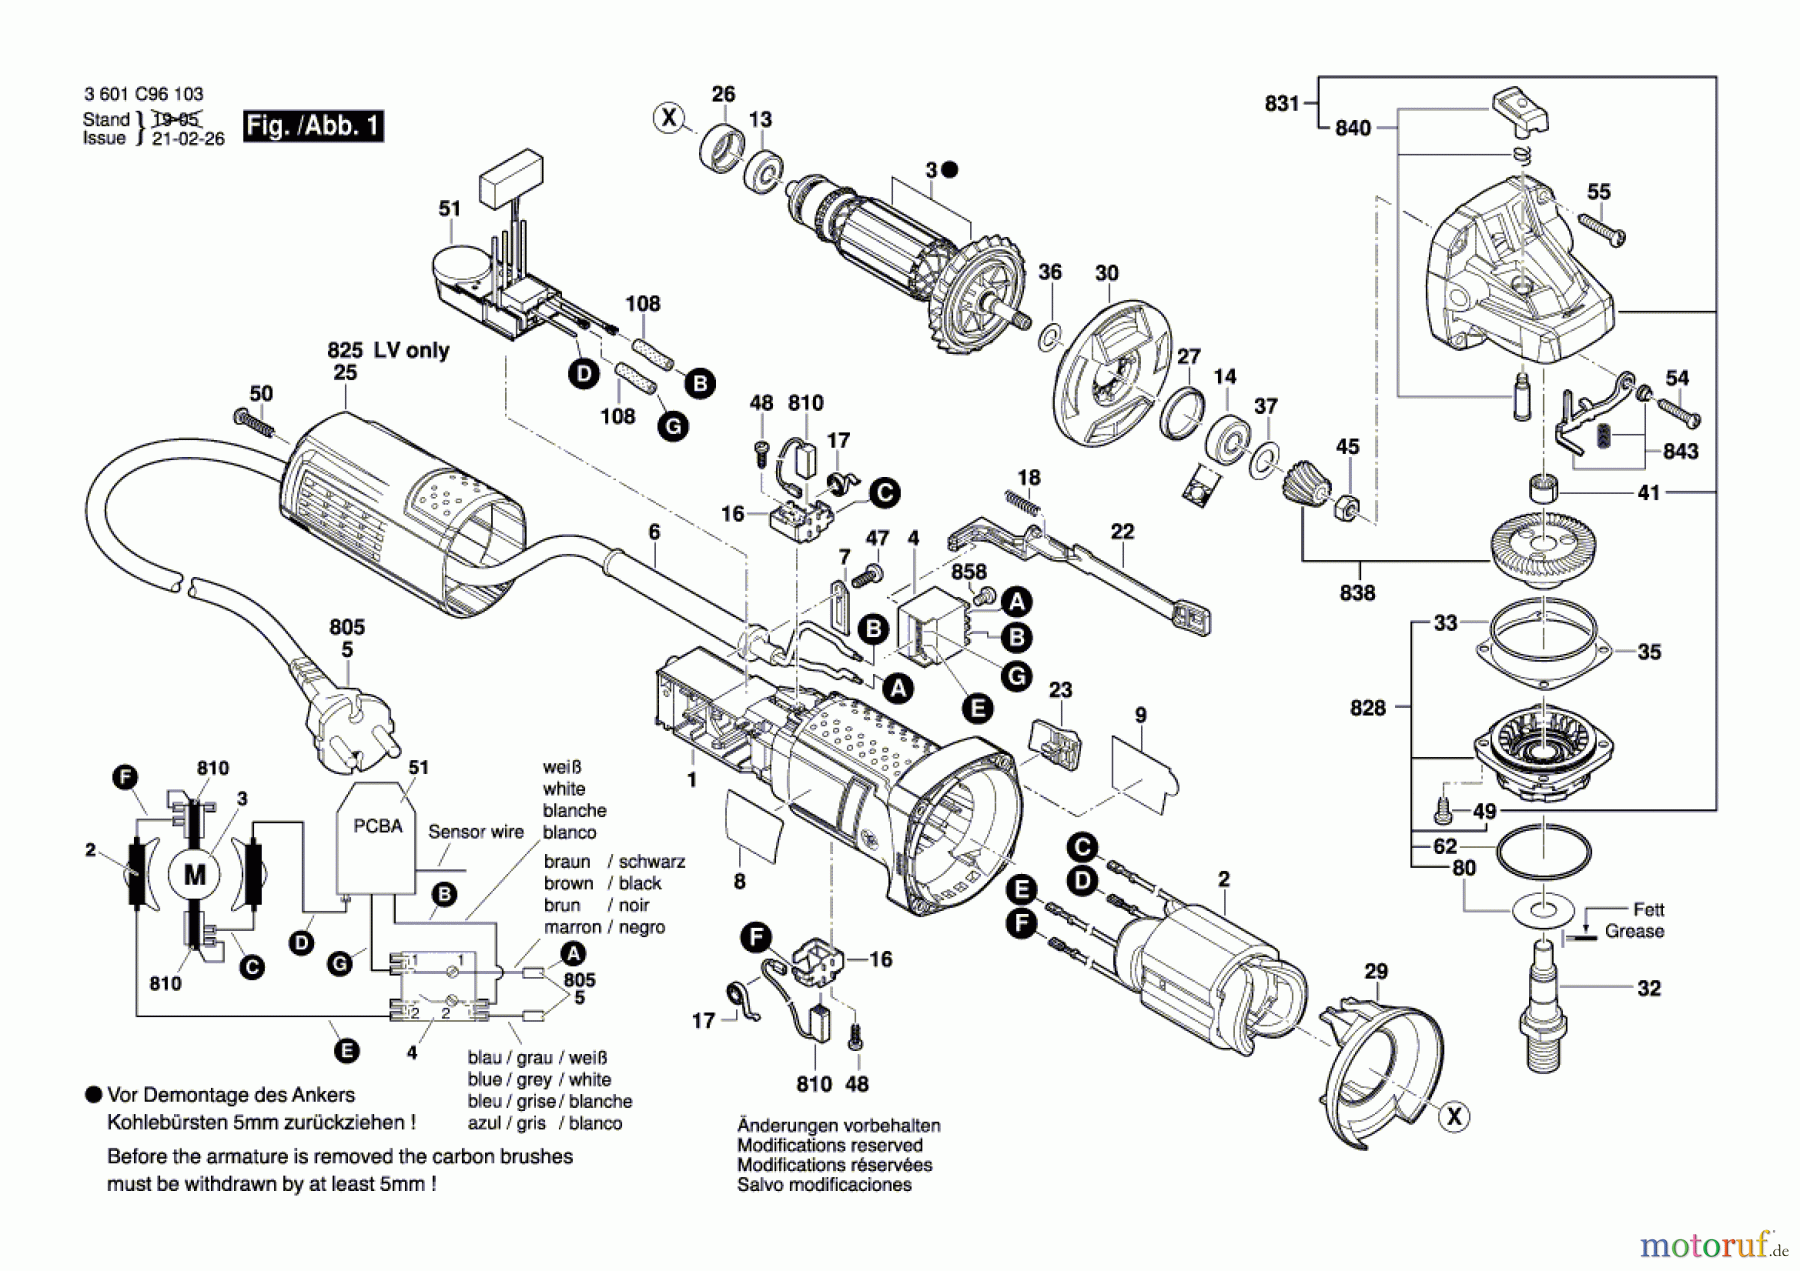  Bosch Werkzeug Winkelschleifer GWS 9-115 S Seite 1